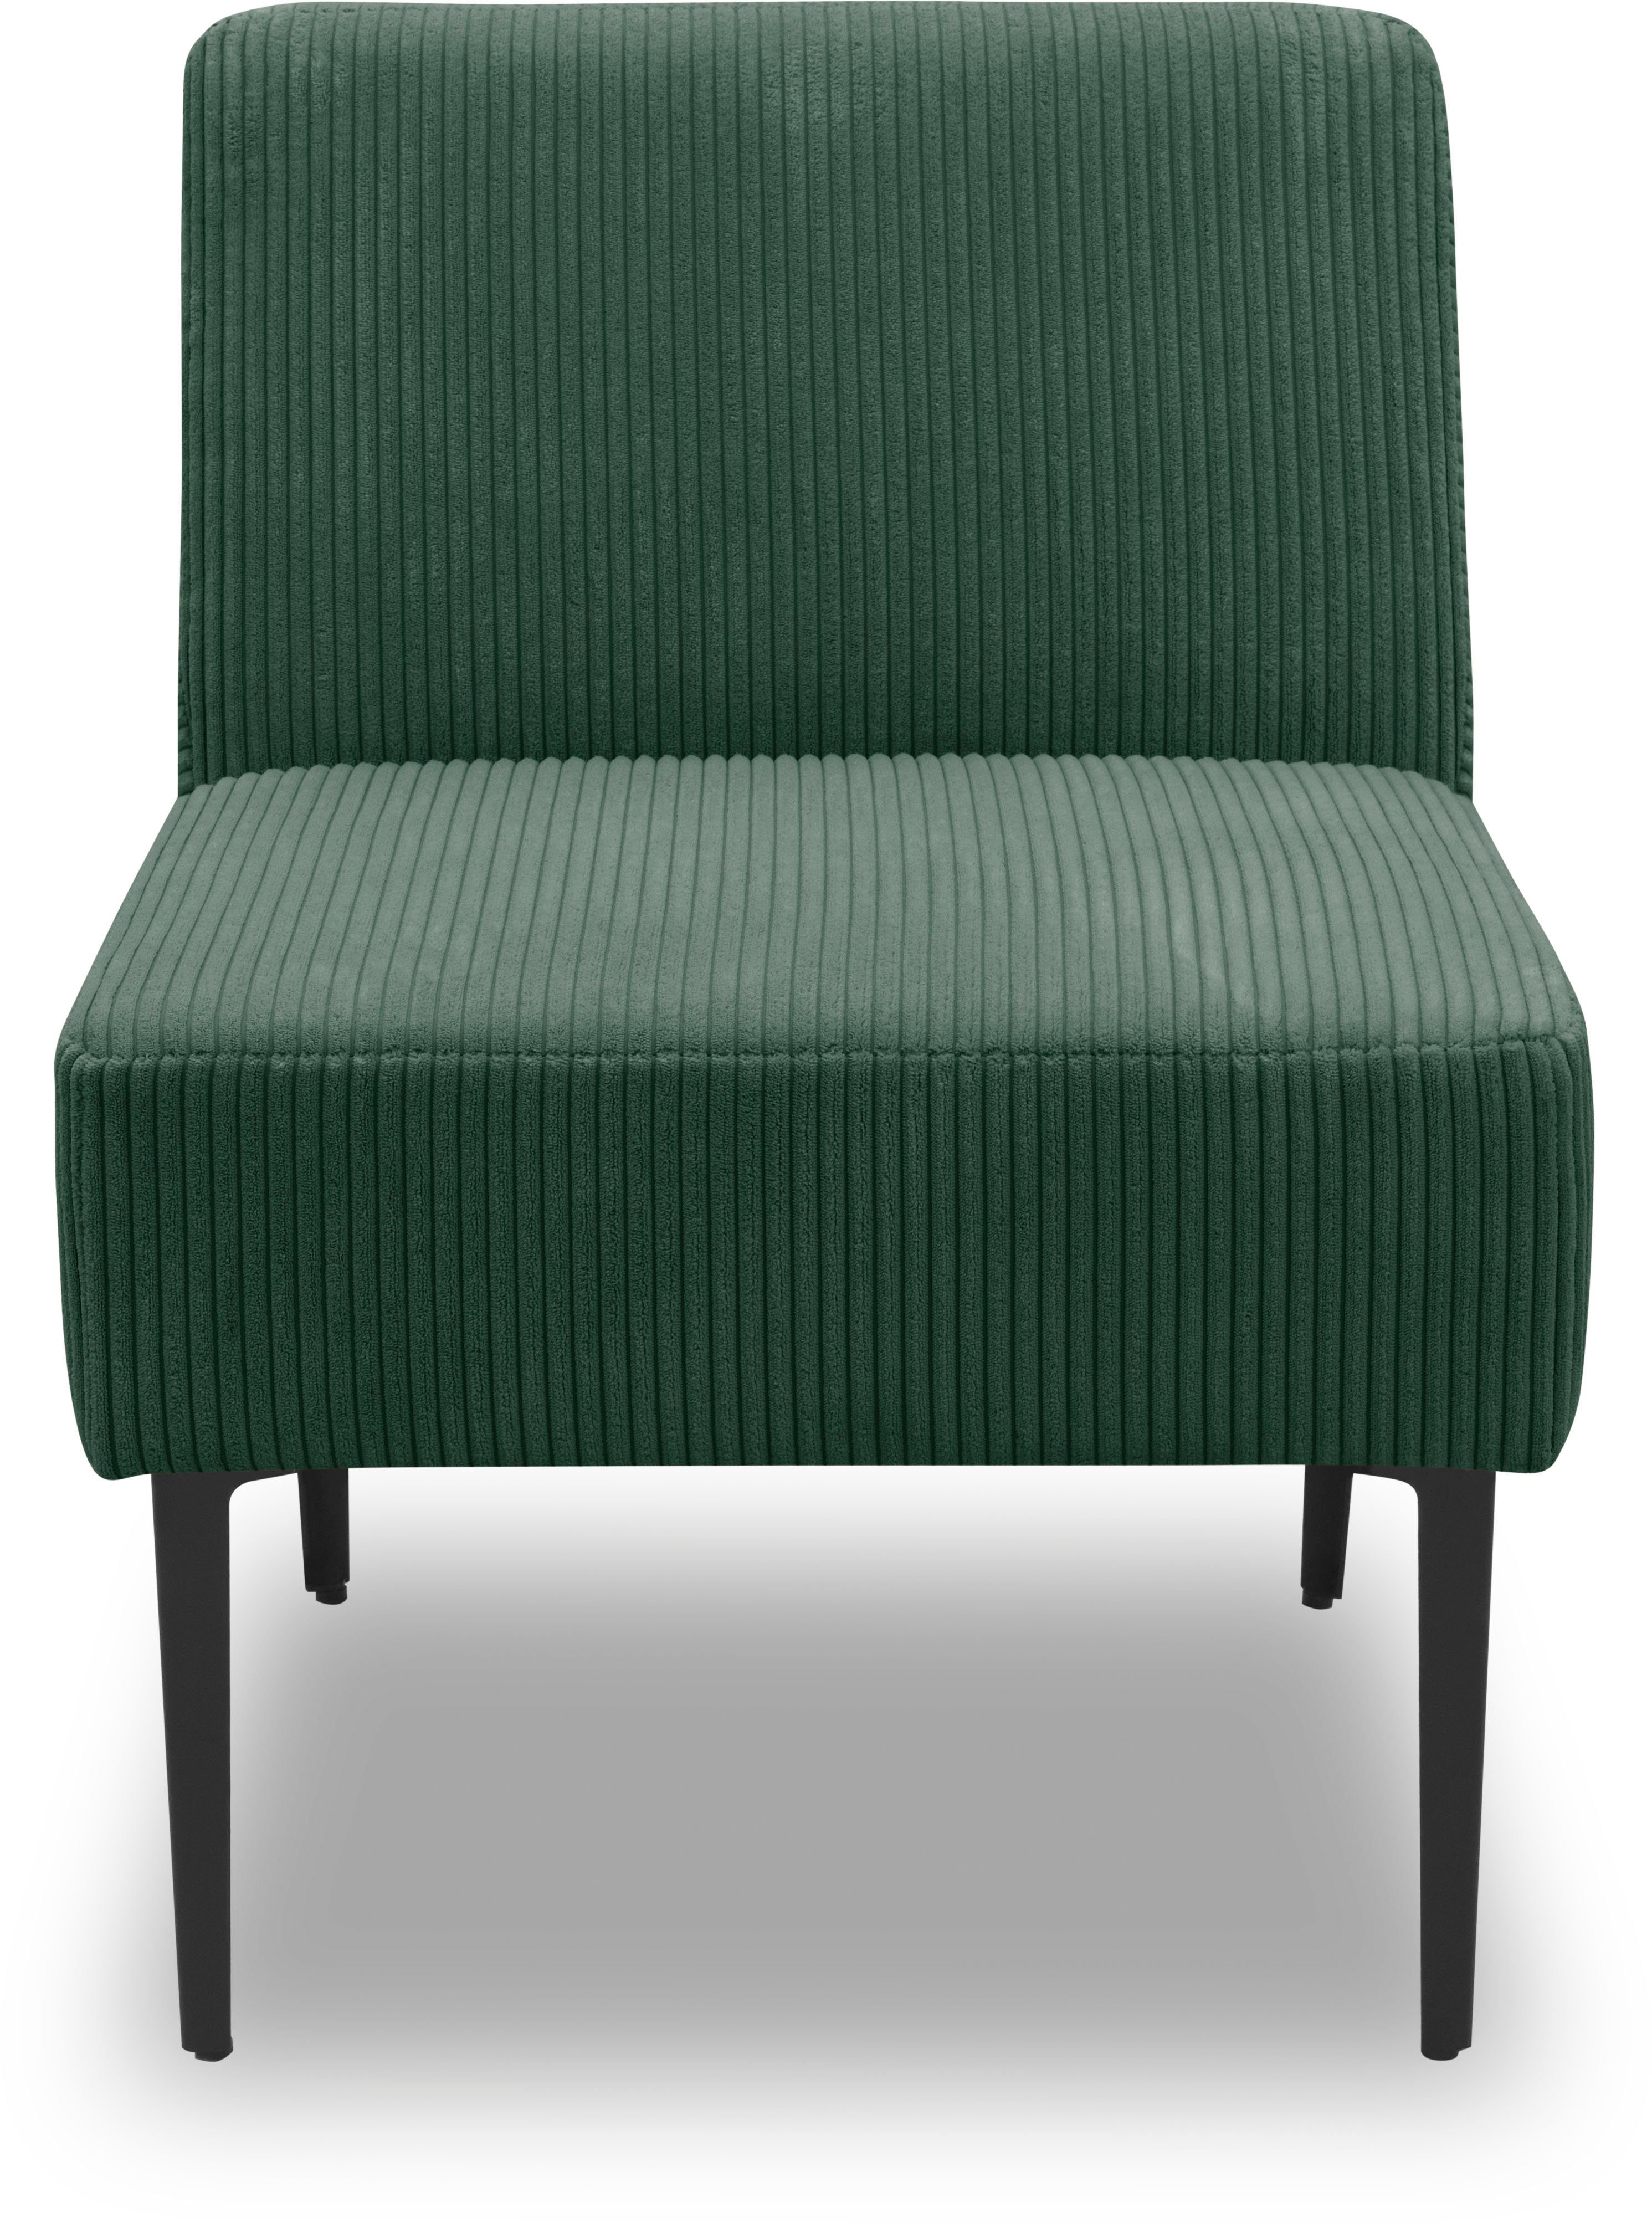 DOMO collection Sessel 700010, für individuelle Zusammenstellung eines persönlichen Sofas dünkelgrün